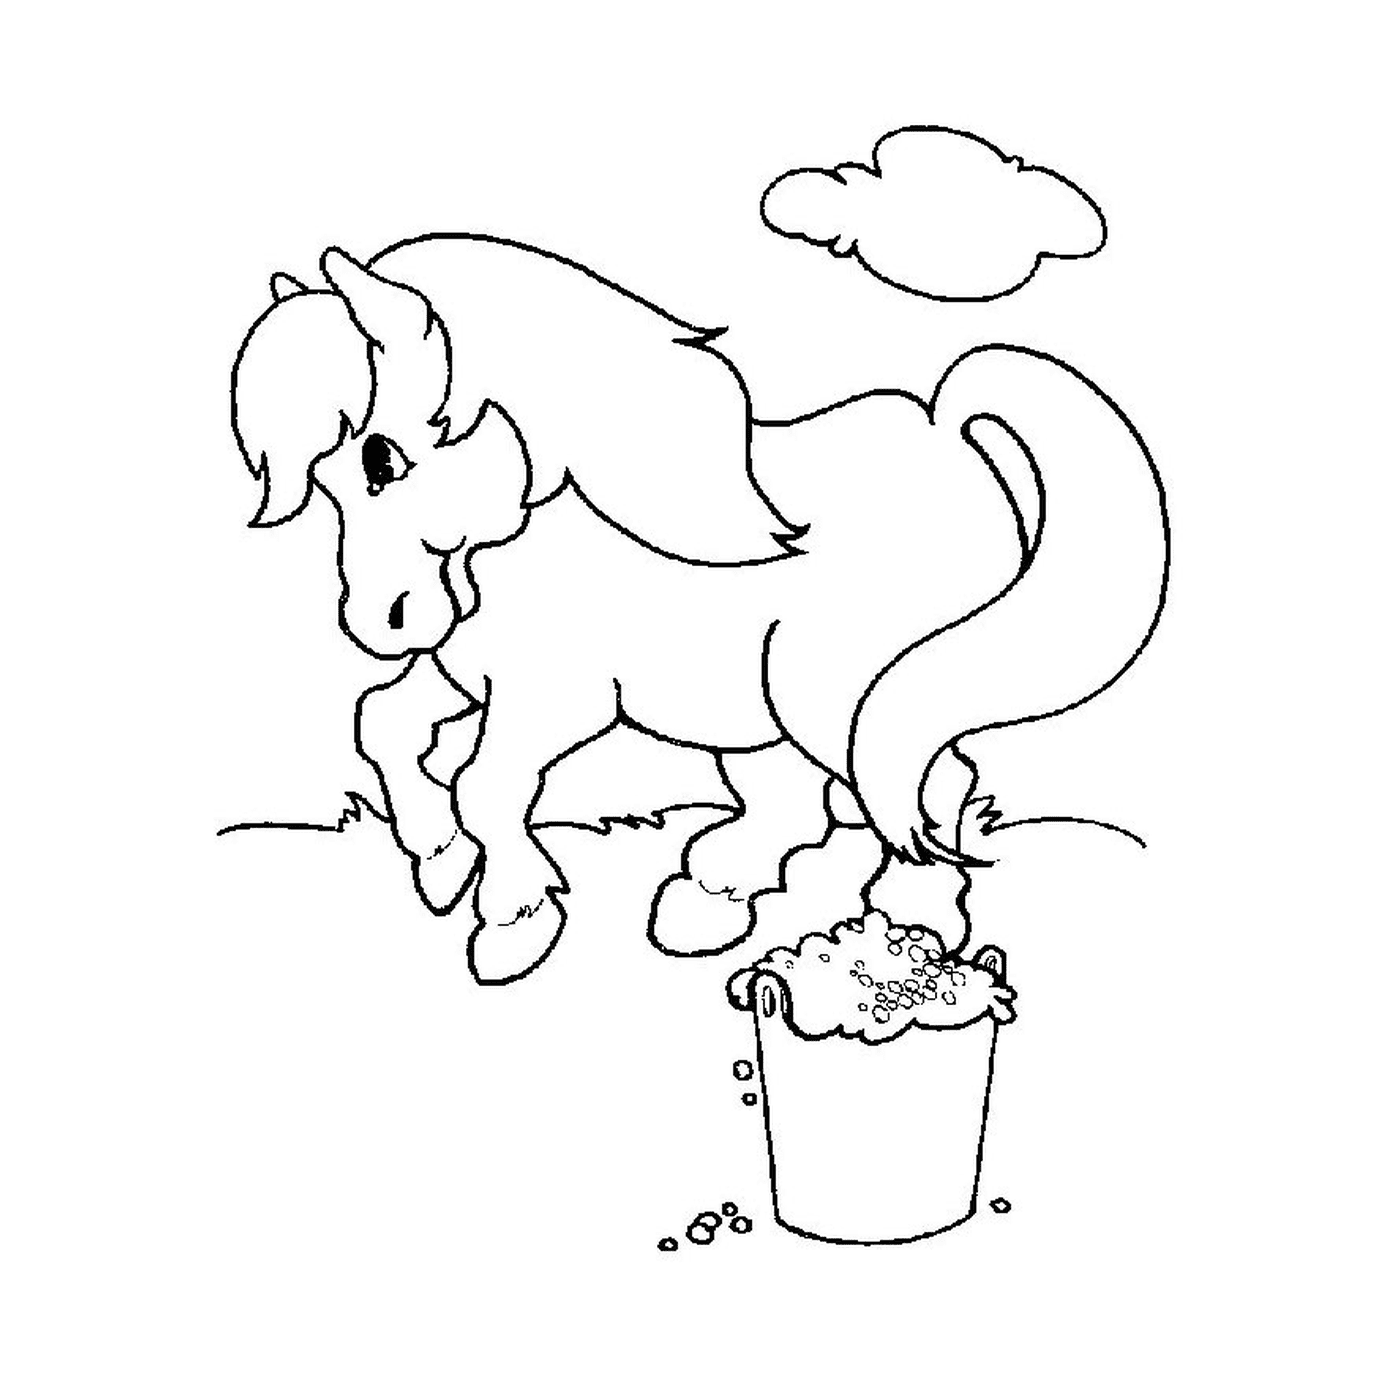  Cavalo ao lado do balde 